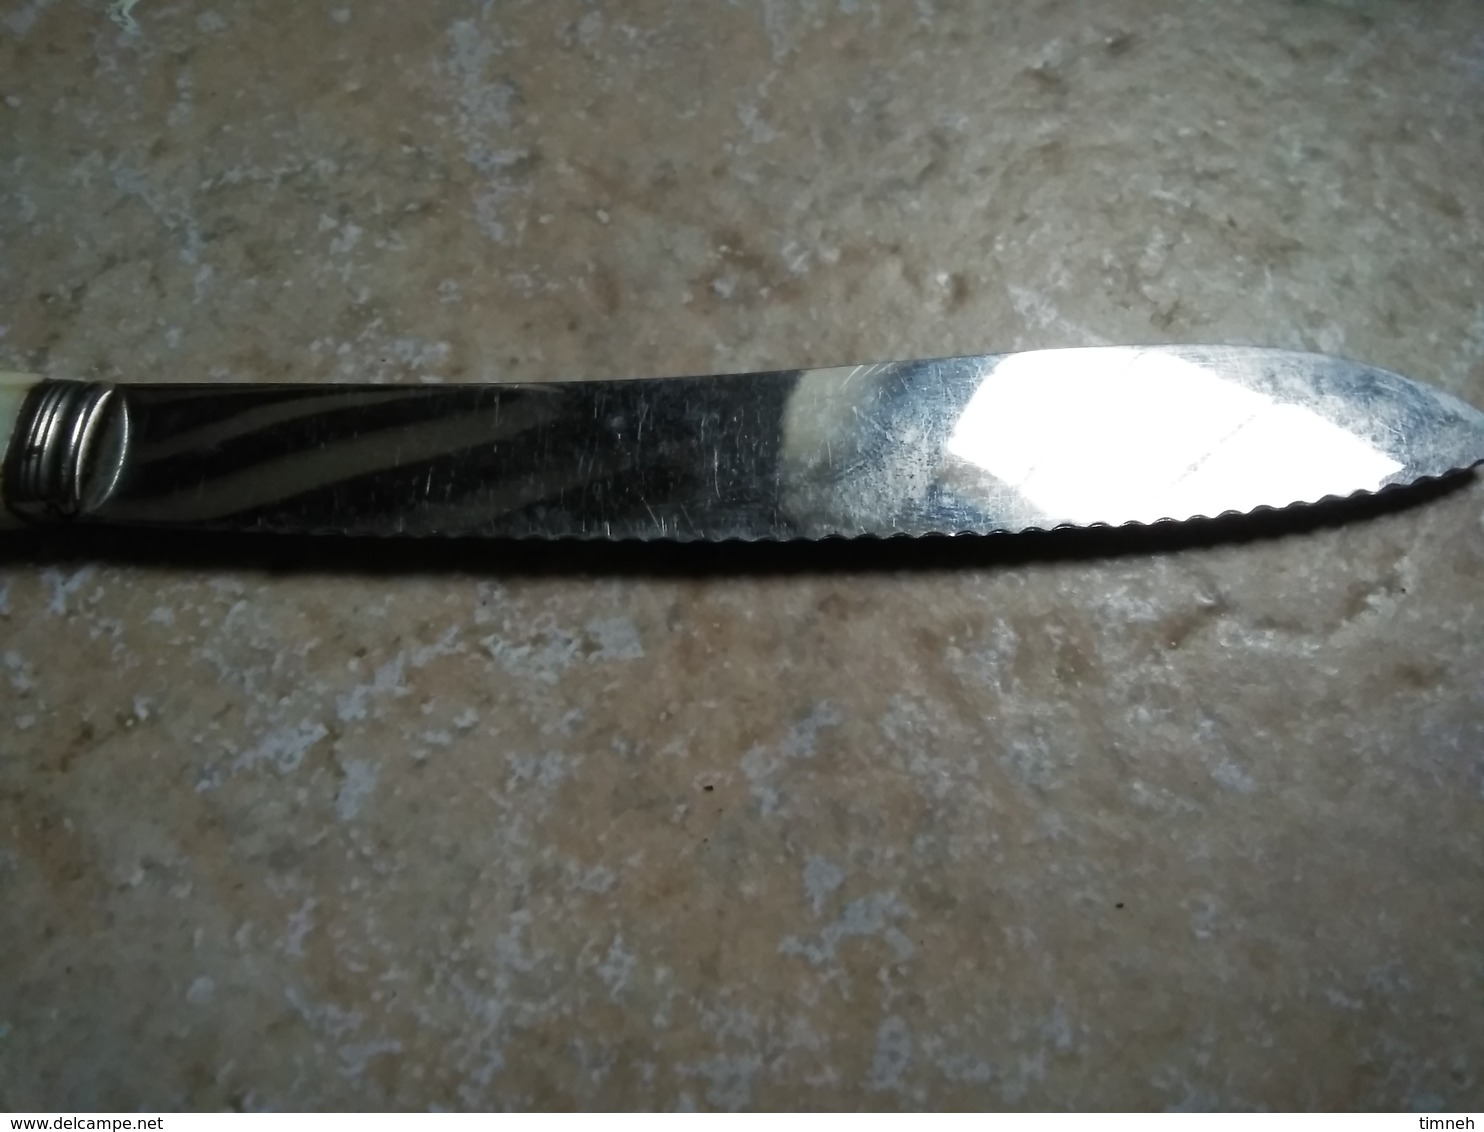 Coffret 12 couteaux blanc à dents 24cm - lame acier inoxydable & manche en plastique/bakélite - vers 1950?